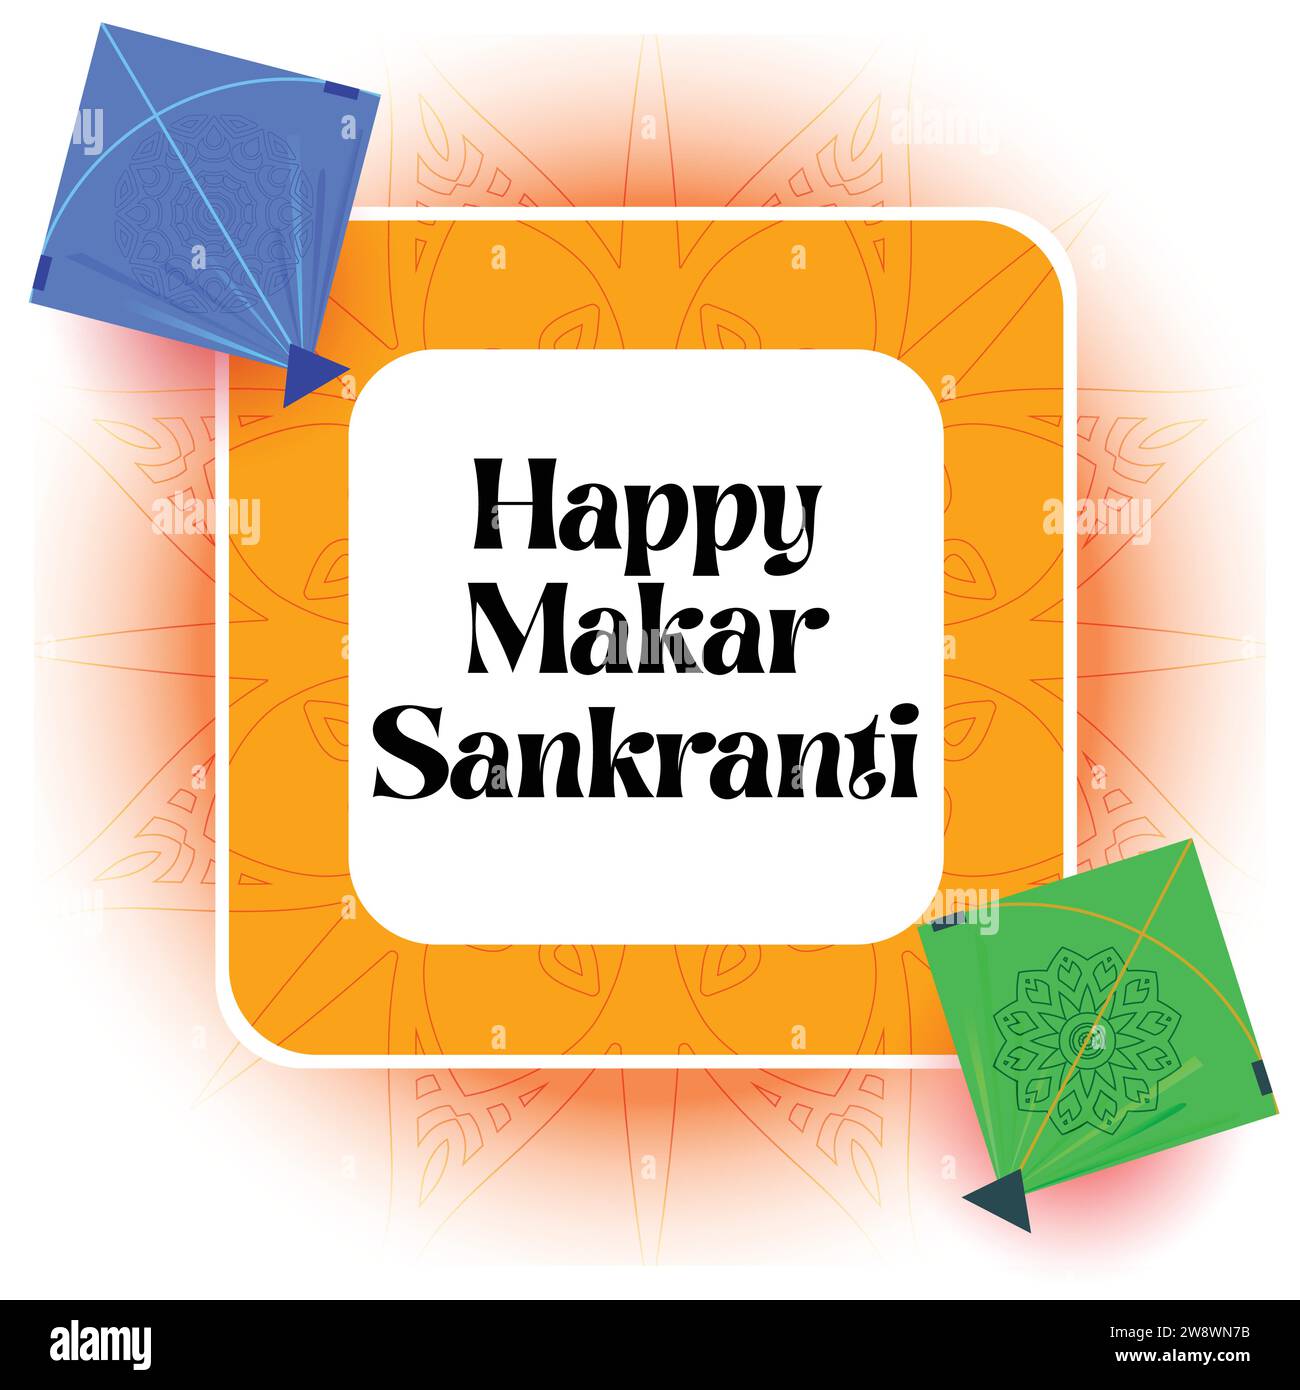 Soaring Spirits of Uttarayan, celebra Makar Sankranti con un vibrante vettore di aquiloni, abbraccia la gioia con aquiloni colorati a simboleggiare il calore. Illustrazione Vettoriale